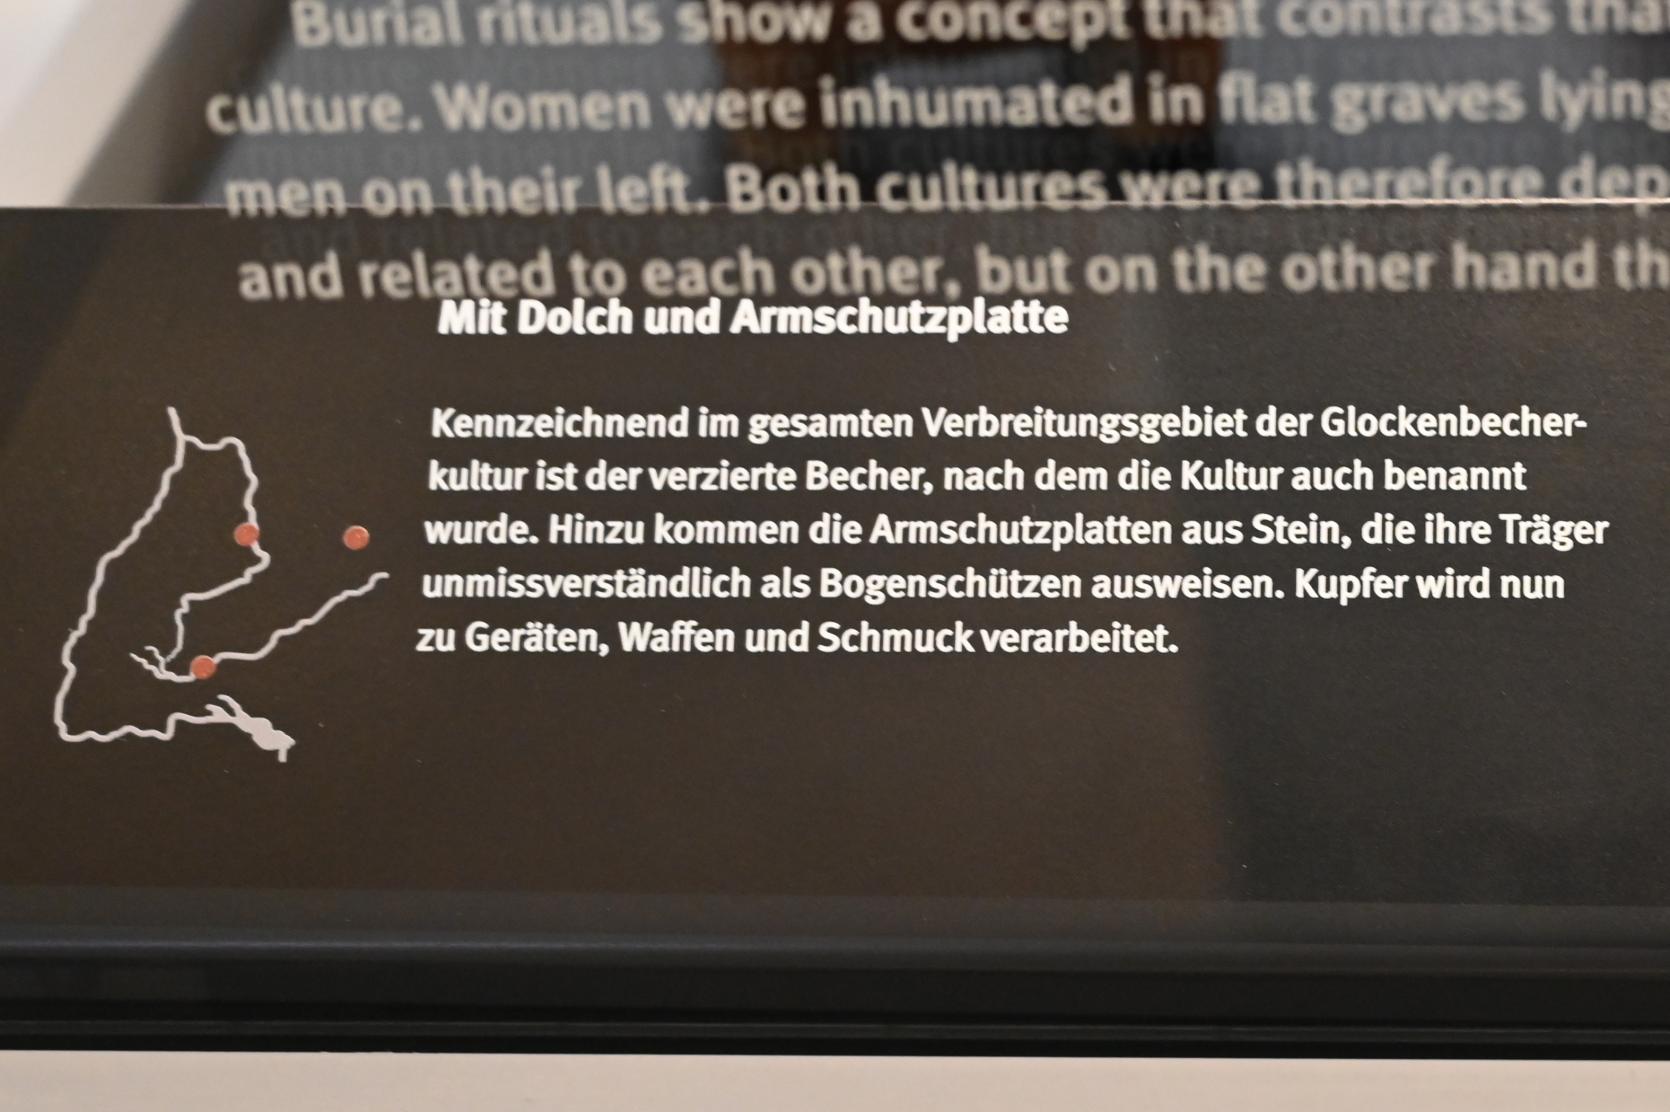 Glockenbecher, Neolithikum (Jungsteinzeit), 5500 - 1700 v. Chr., 2400 v. Chr., Bild 3/3